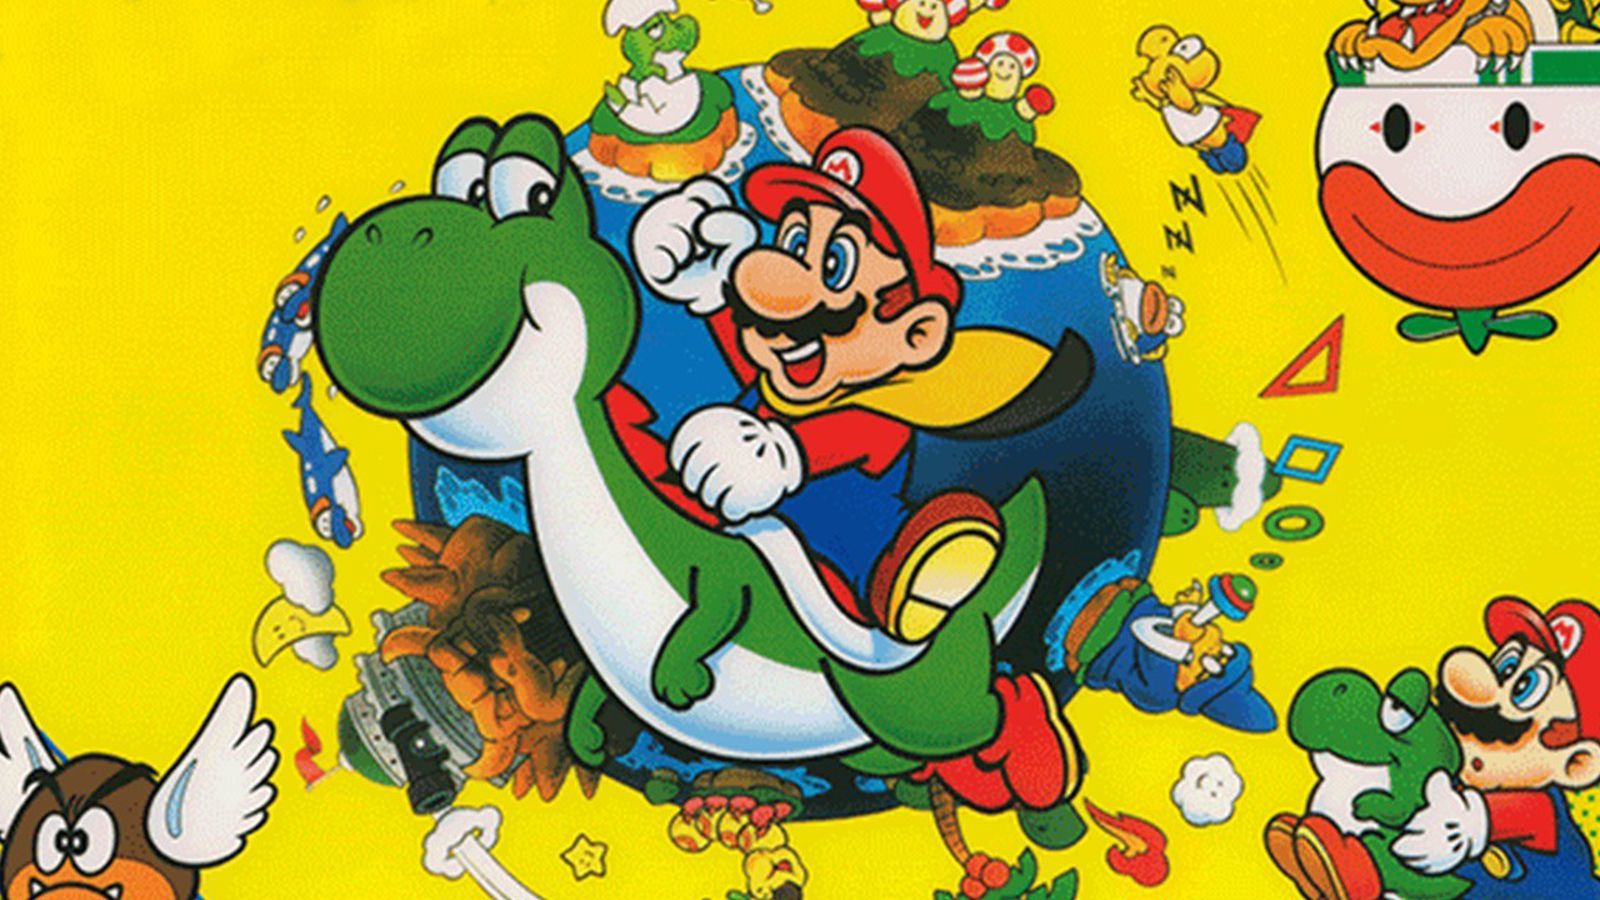 Grupo cria músicas remasterizadas de Super Mario World usando áudios  originais - Canaltech